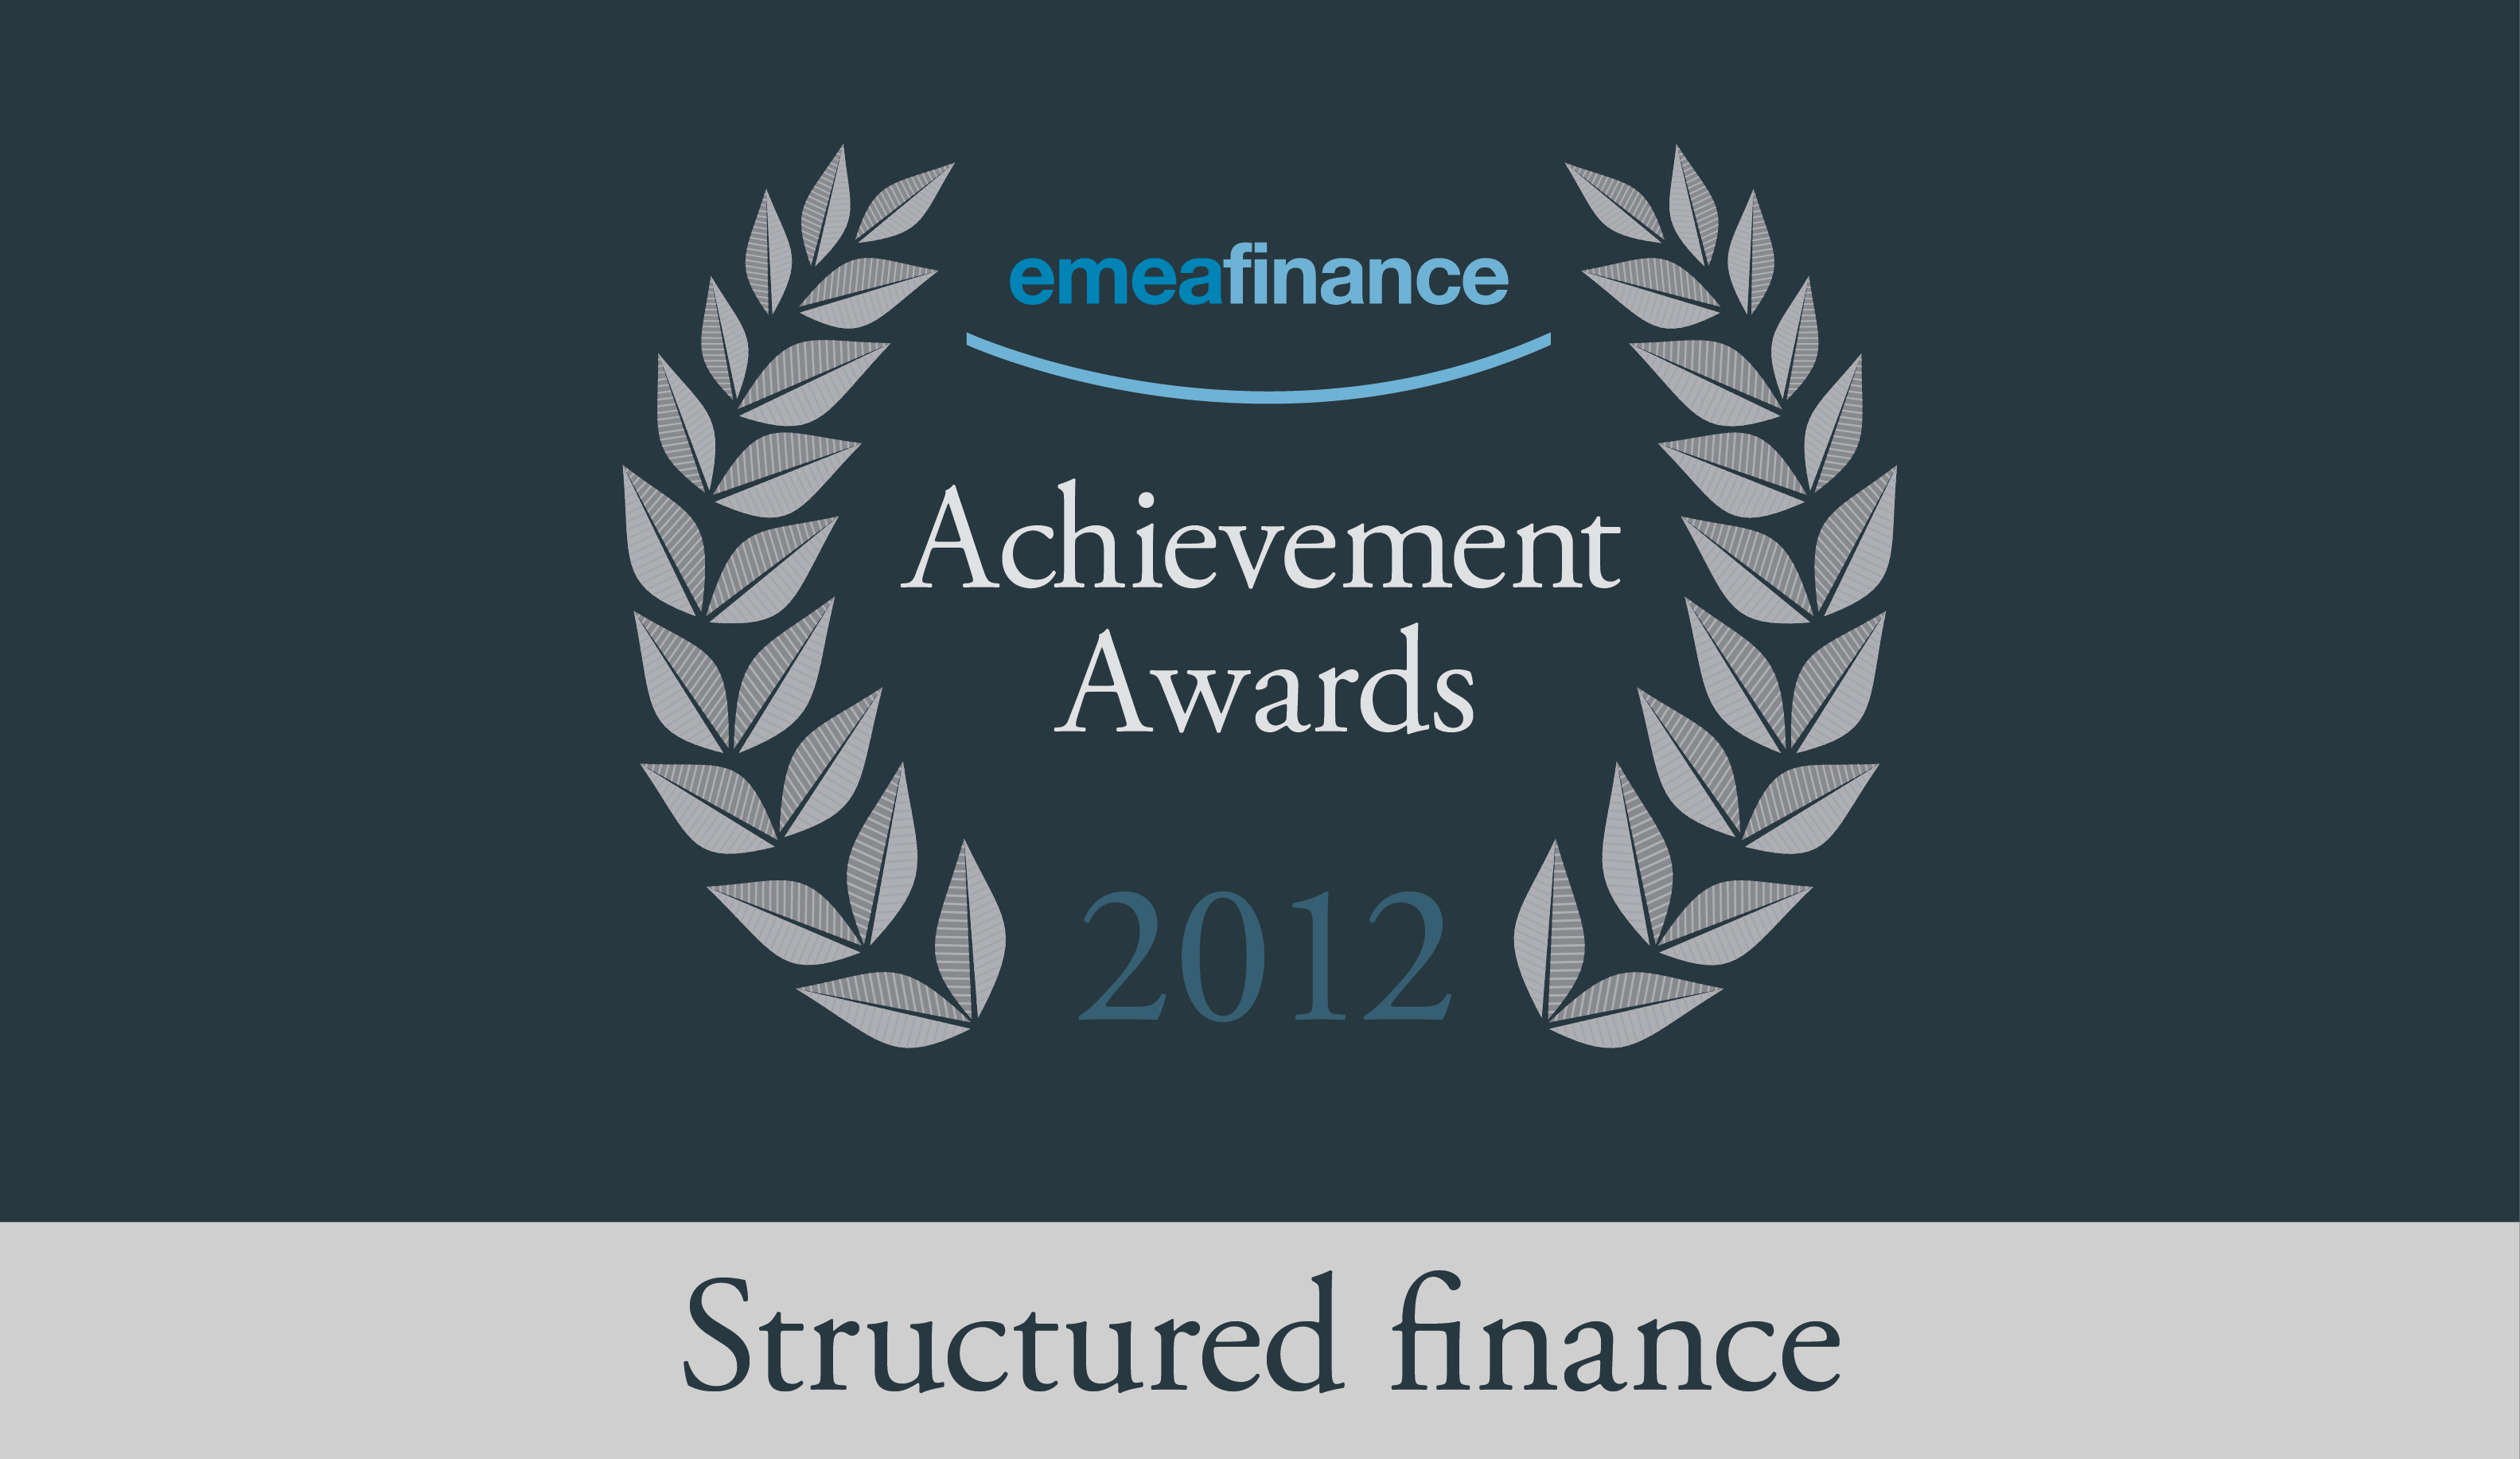 Achievement Awards 2012: Structured finance